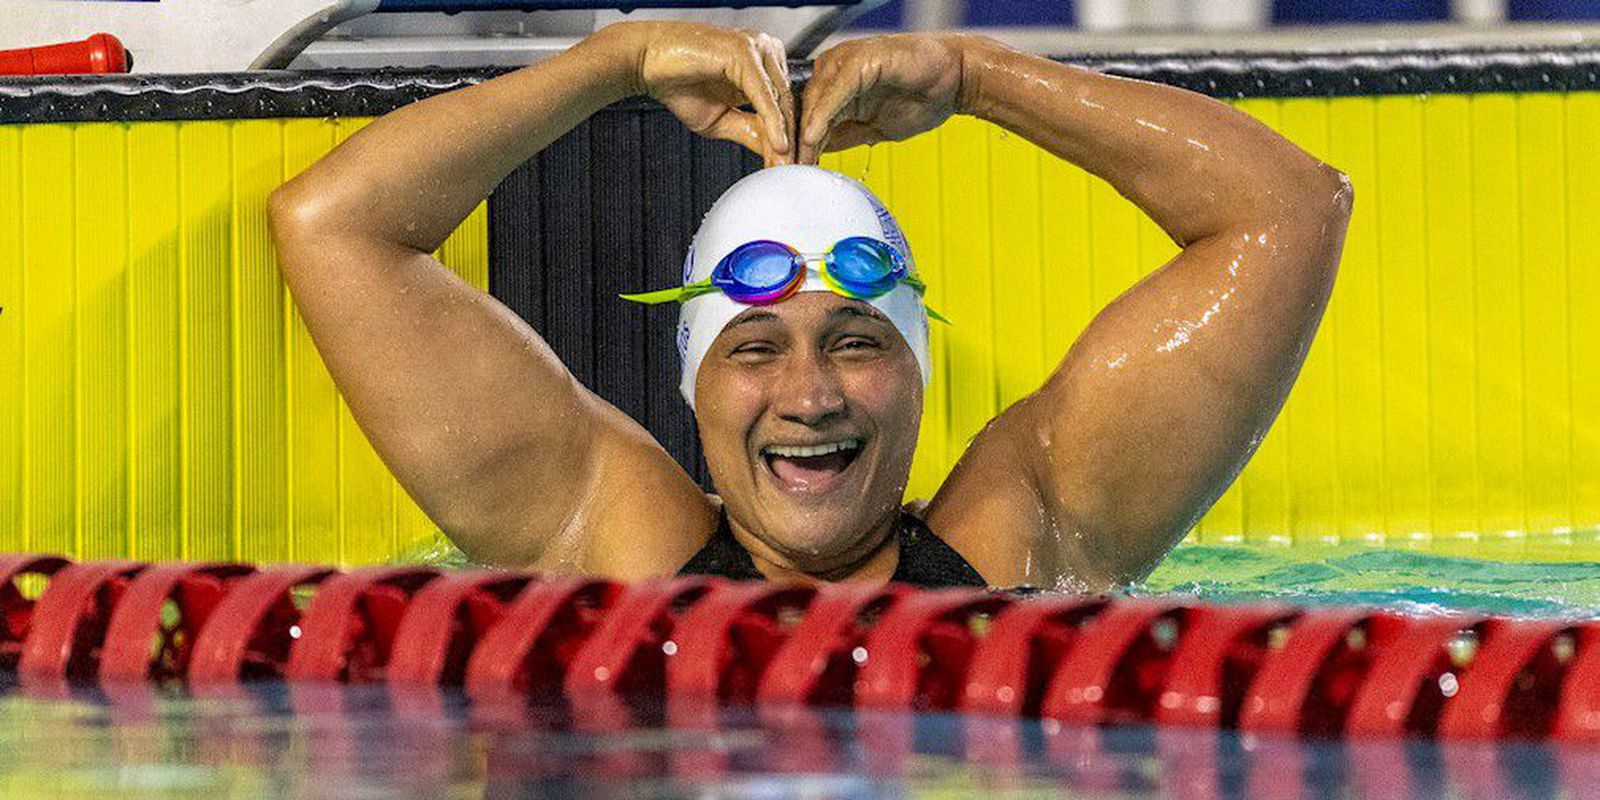 Nacional de natação paralímpica acaba com recorde das Américas